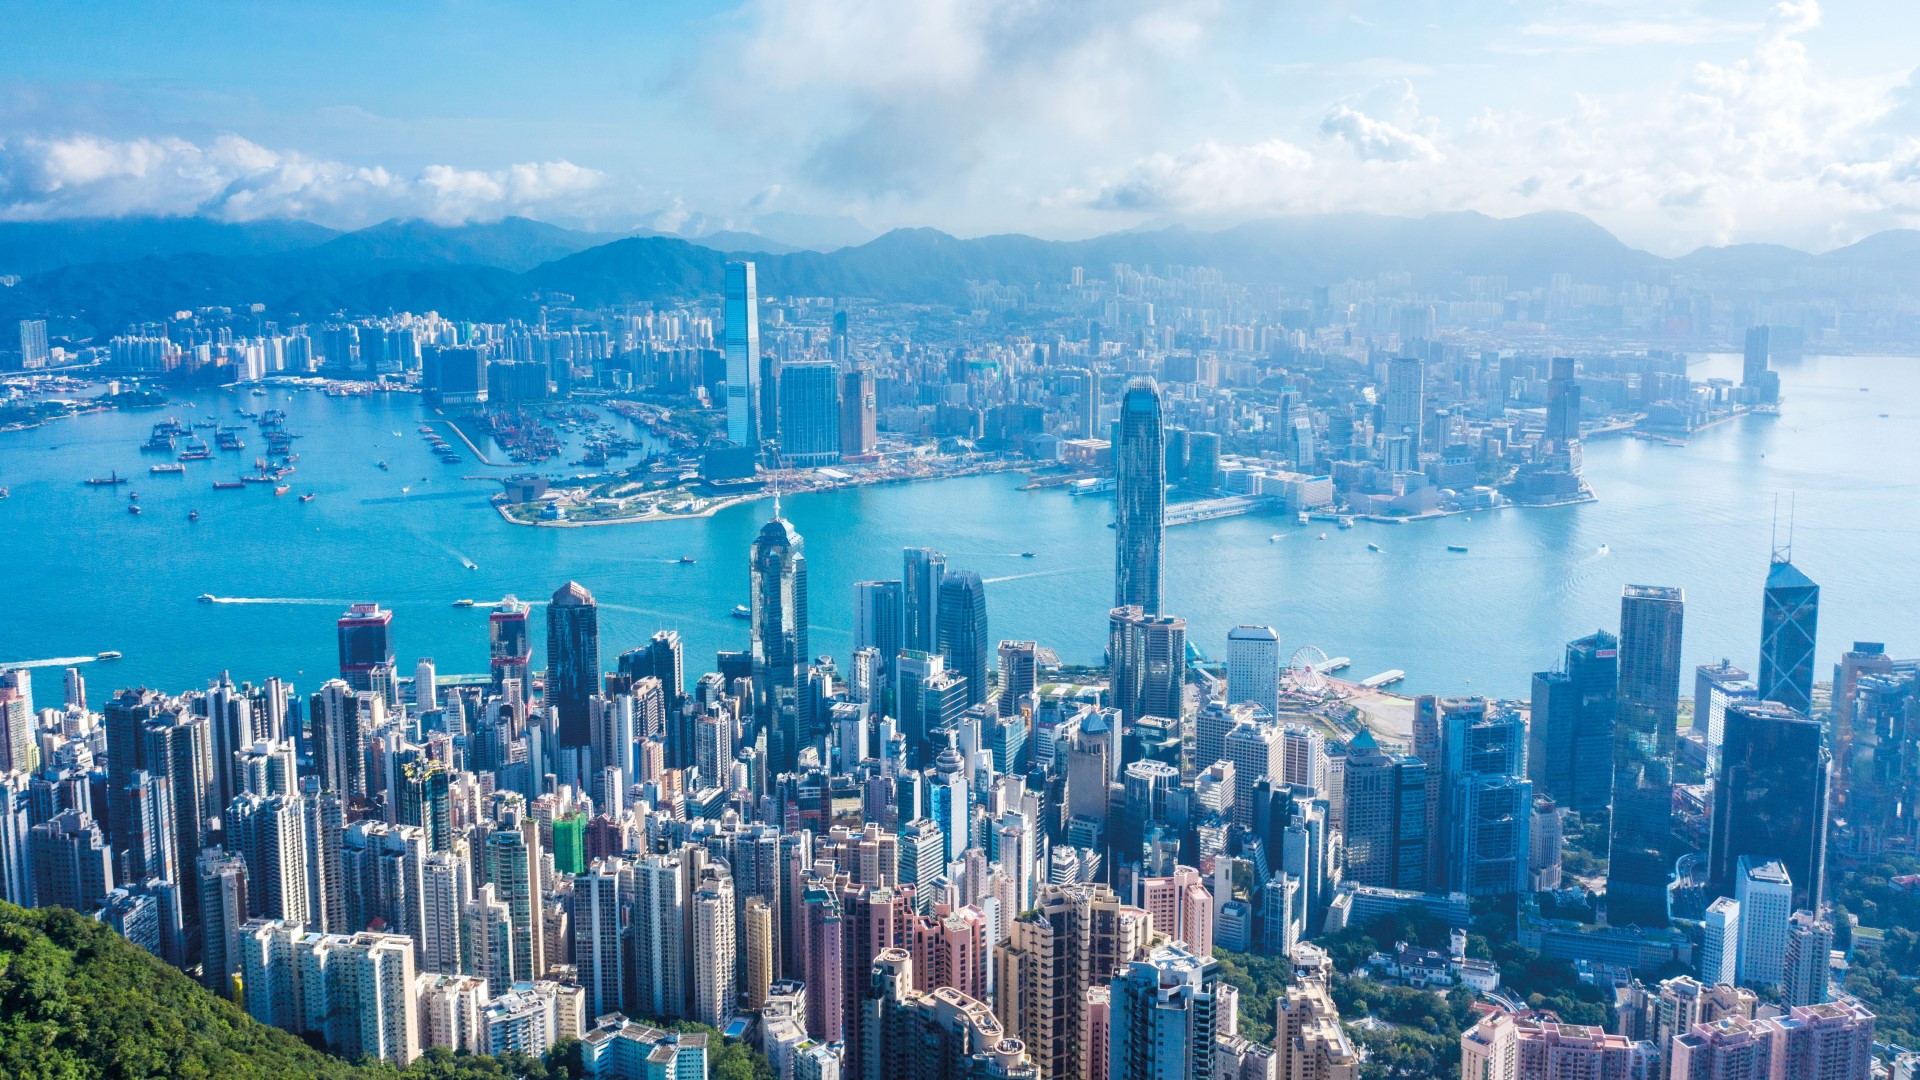 香港のシンボル、ビクトリア・ハーバーを堪能する10のベストな方法